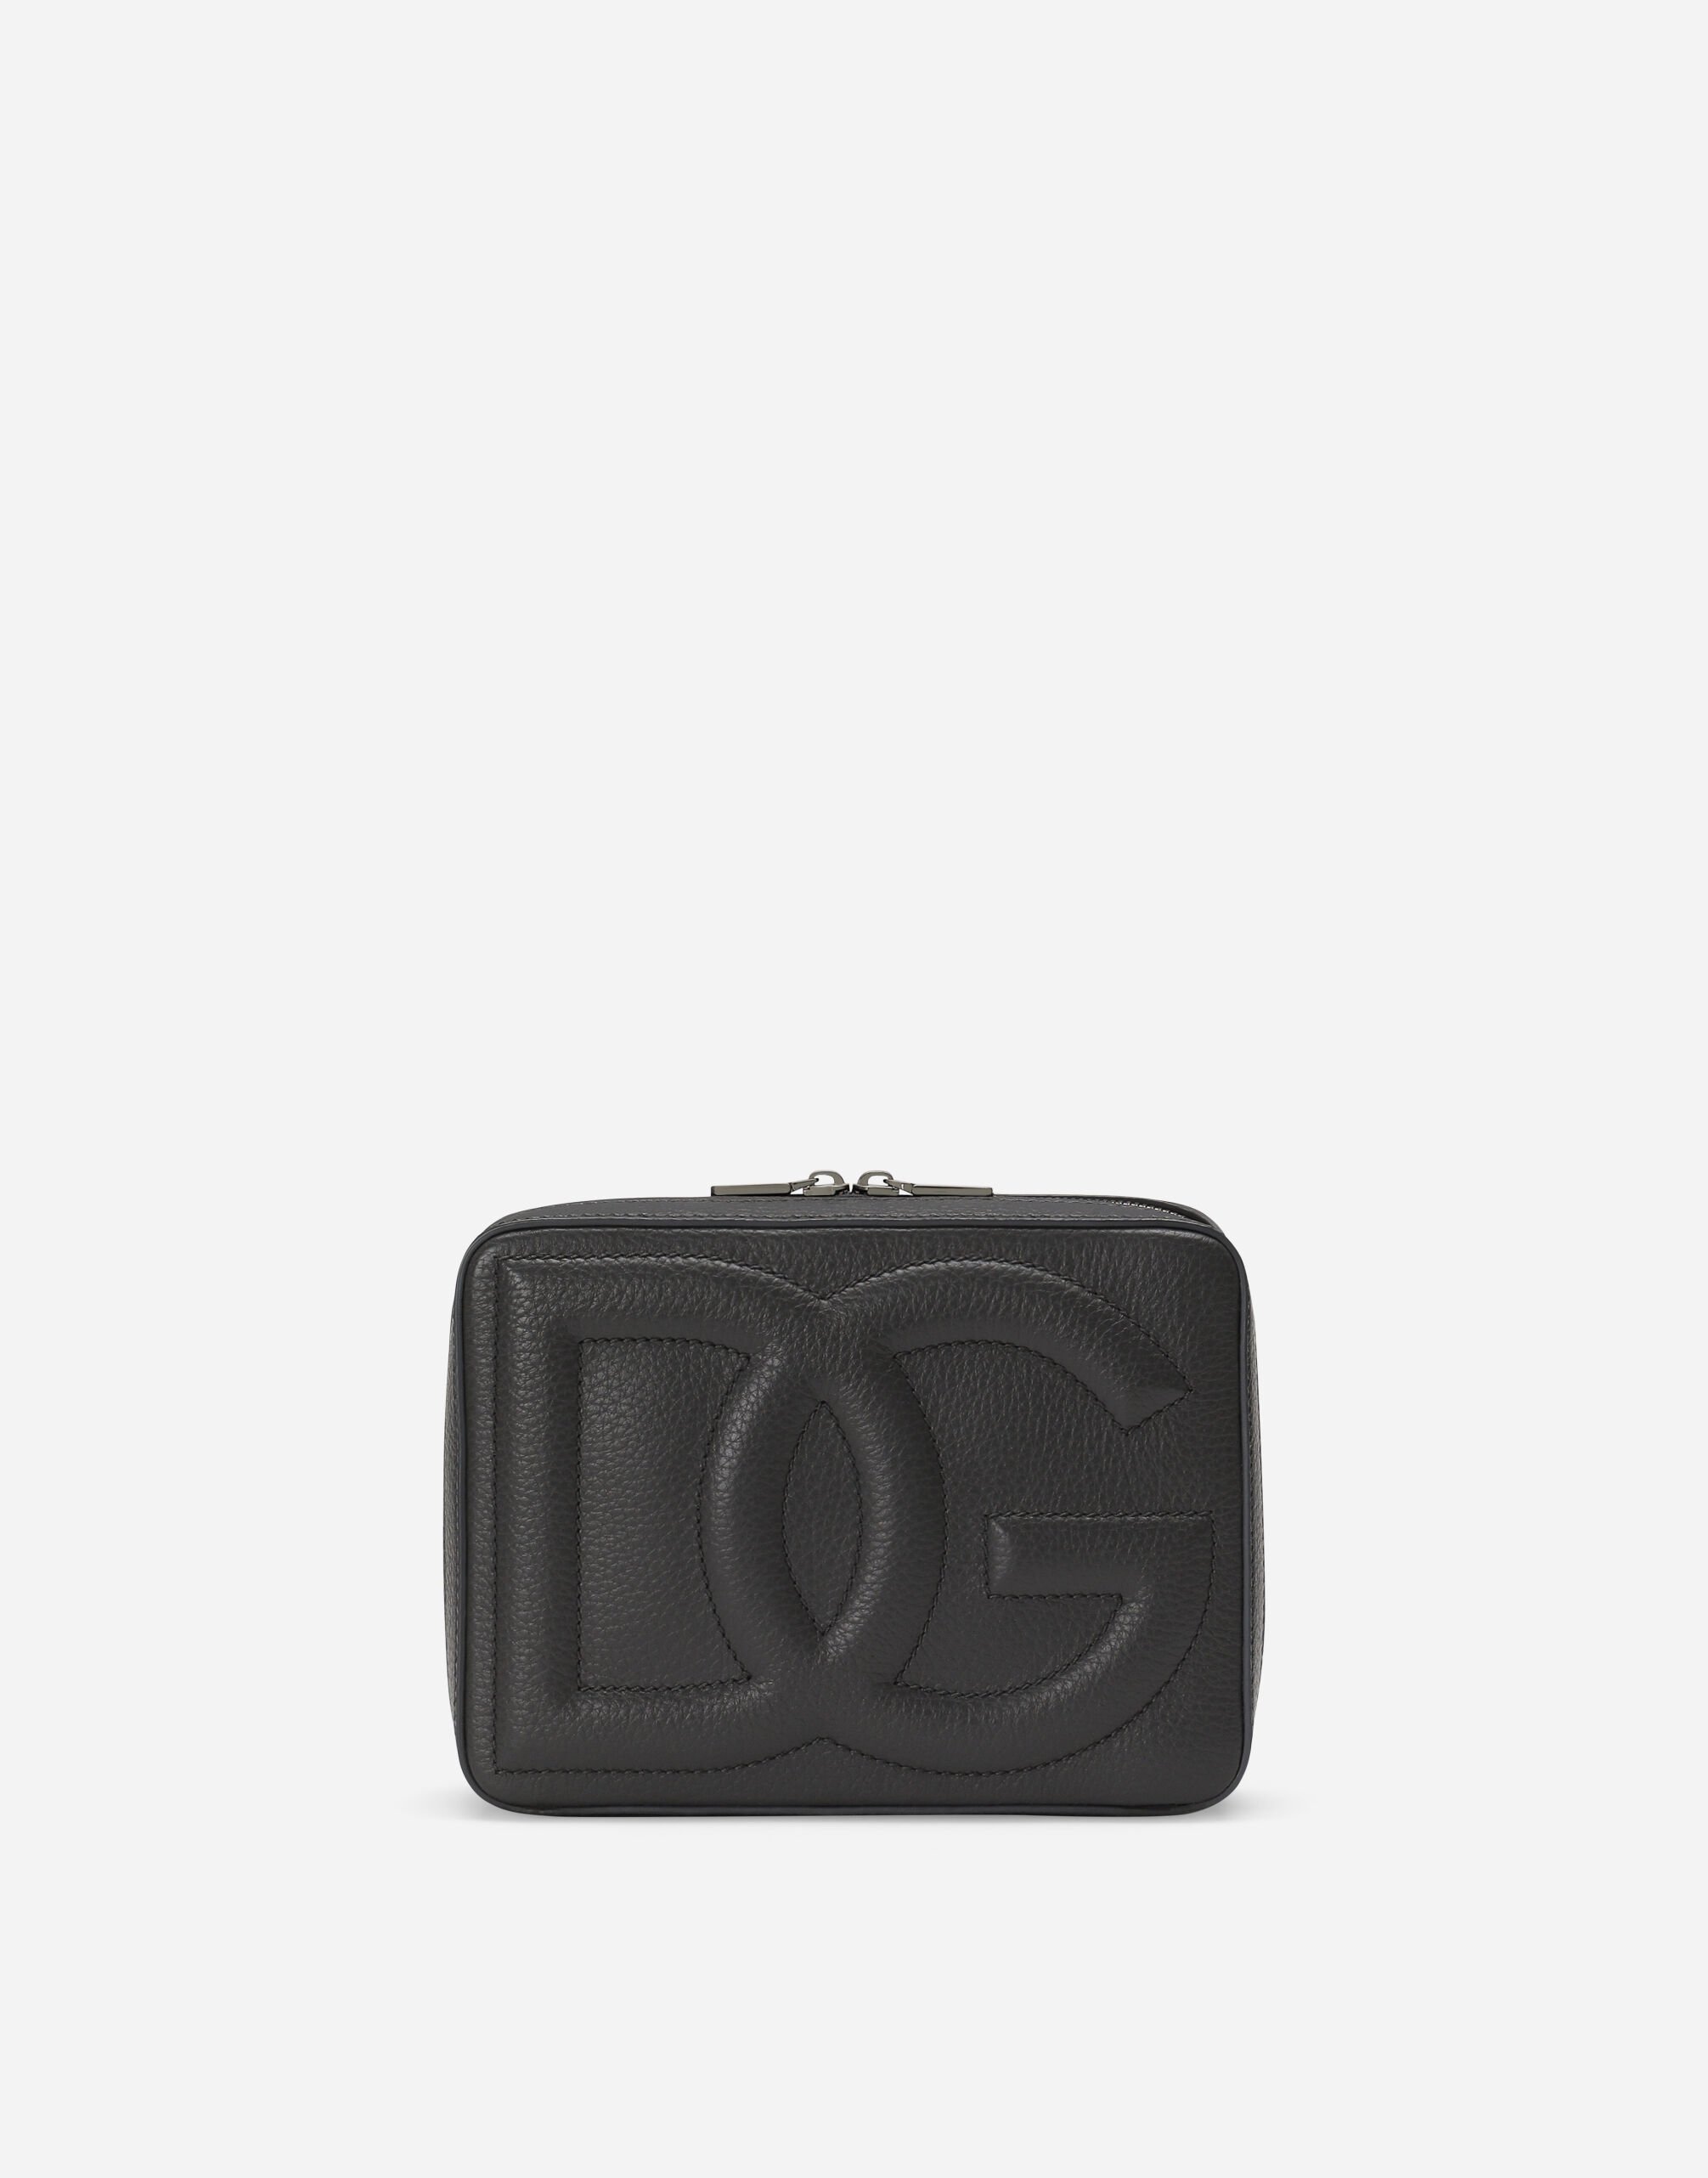 Dolce & Gabbana Камера-бэг DG Logo среднего размера коричневый BM3004A1275